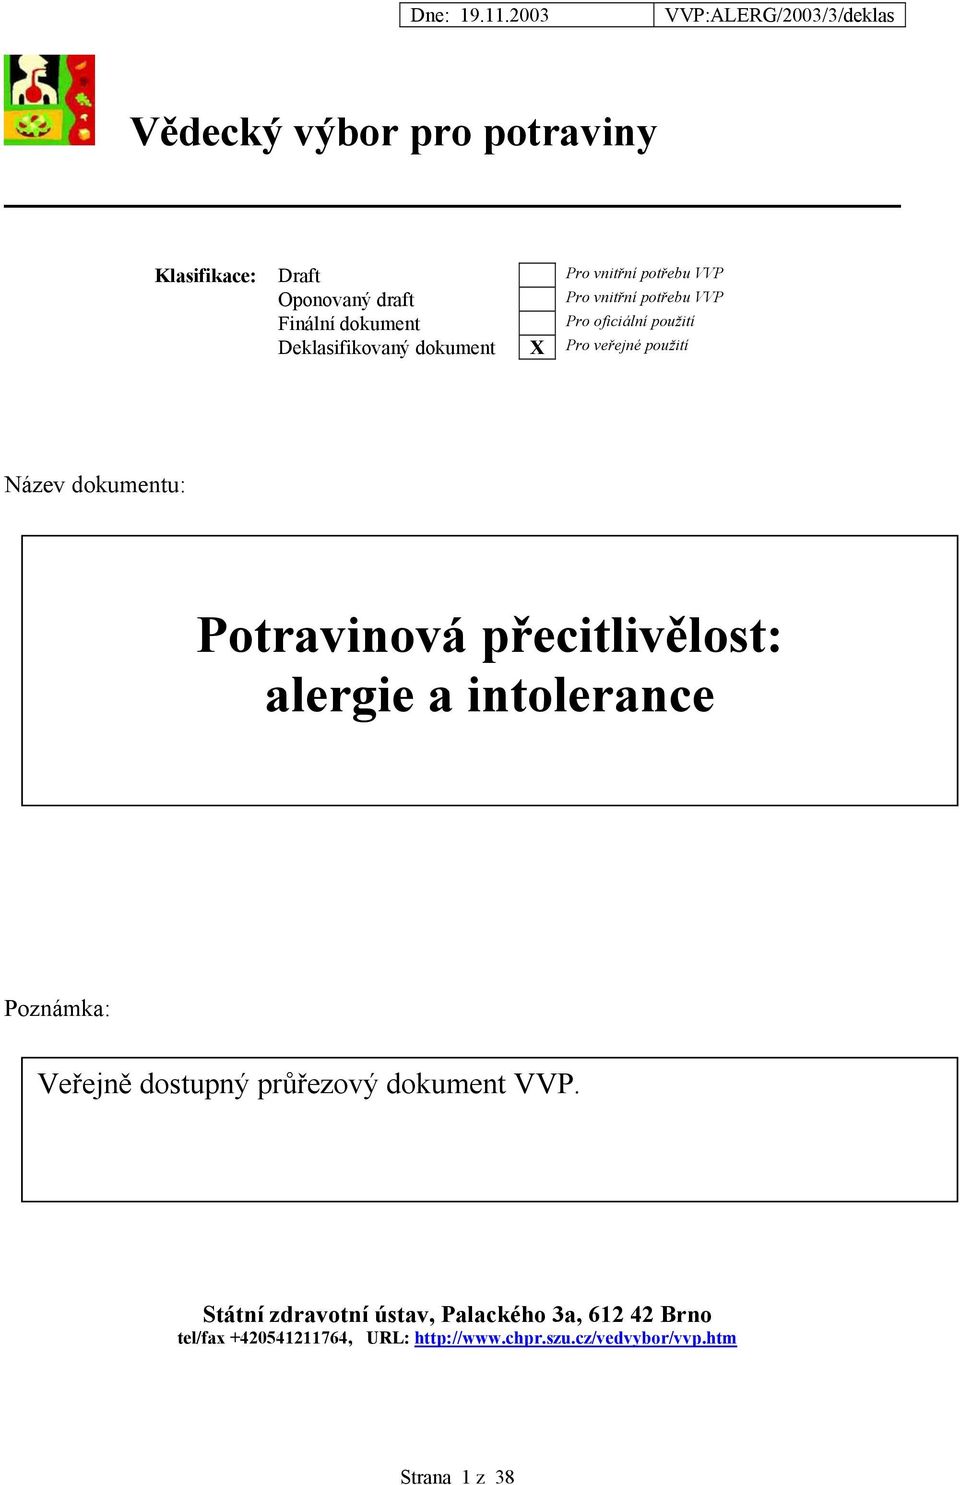 Potravinová přecitlivělost: alergie a intolerance Poznámka: Veřejně dostupný průřezový dokument VVP.